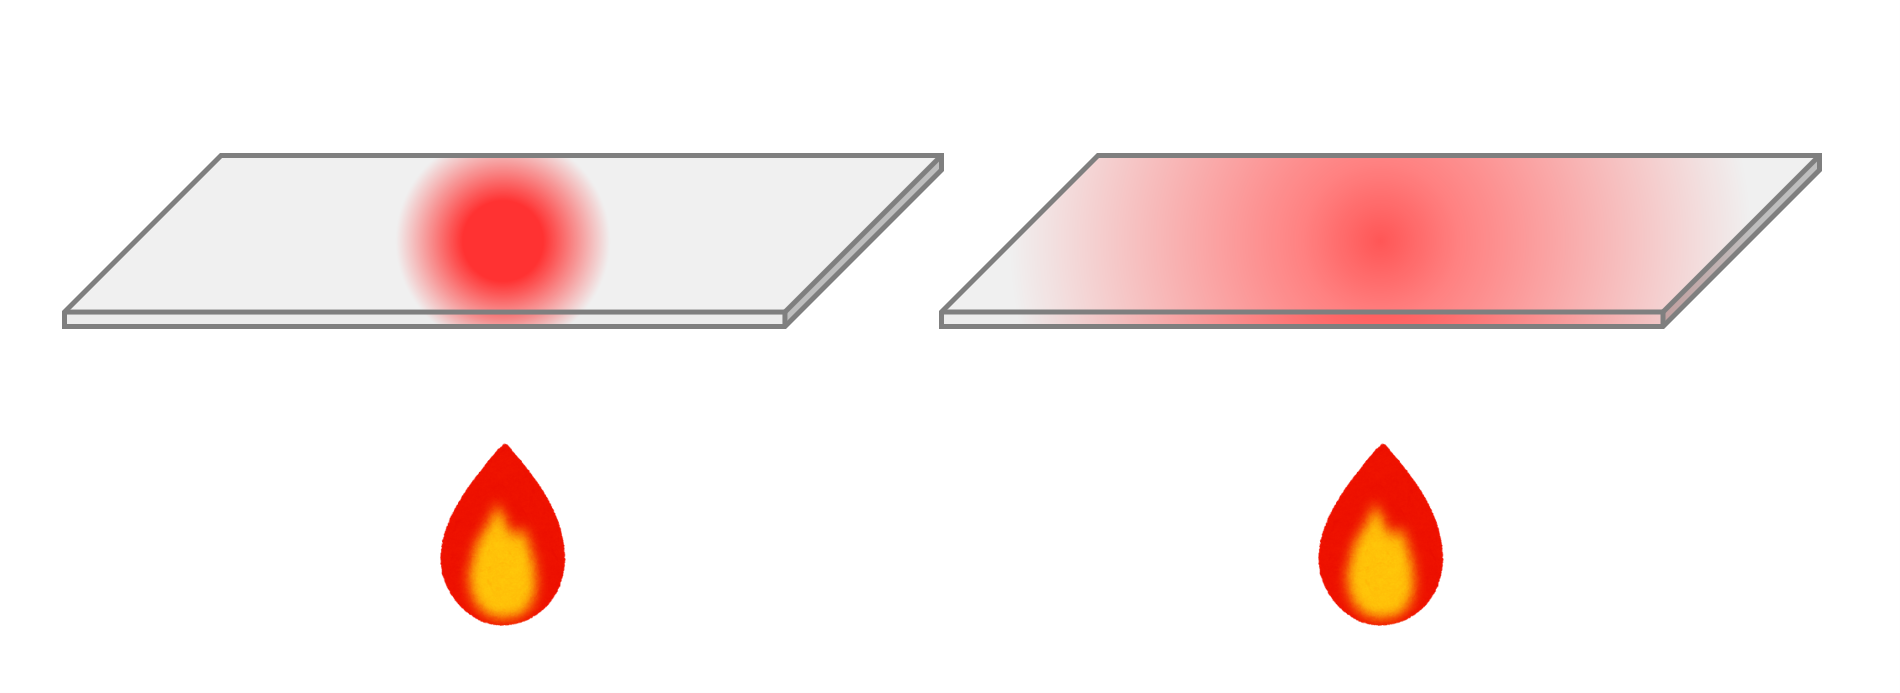 熱伝導率の低い金属と高い金属の図